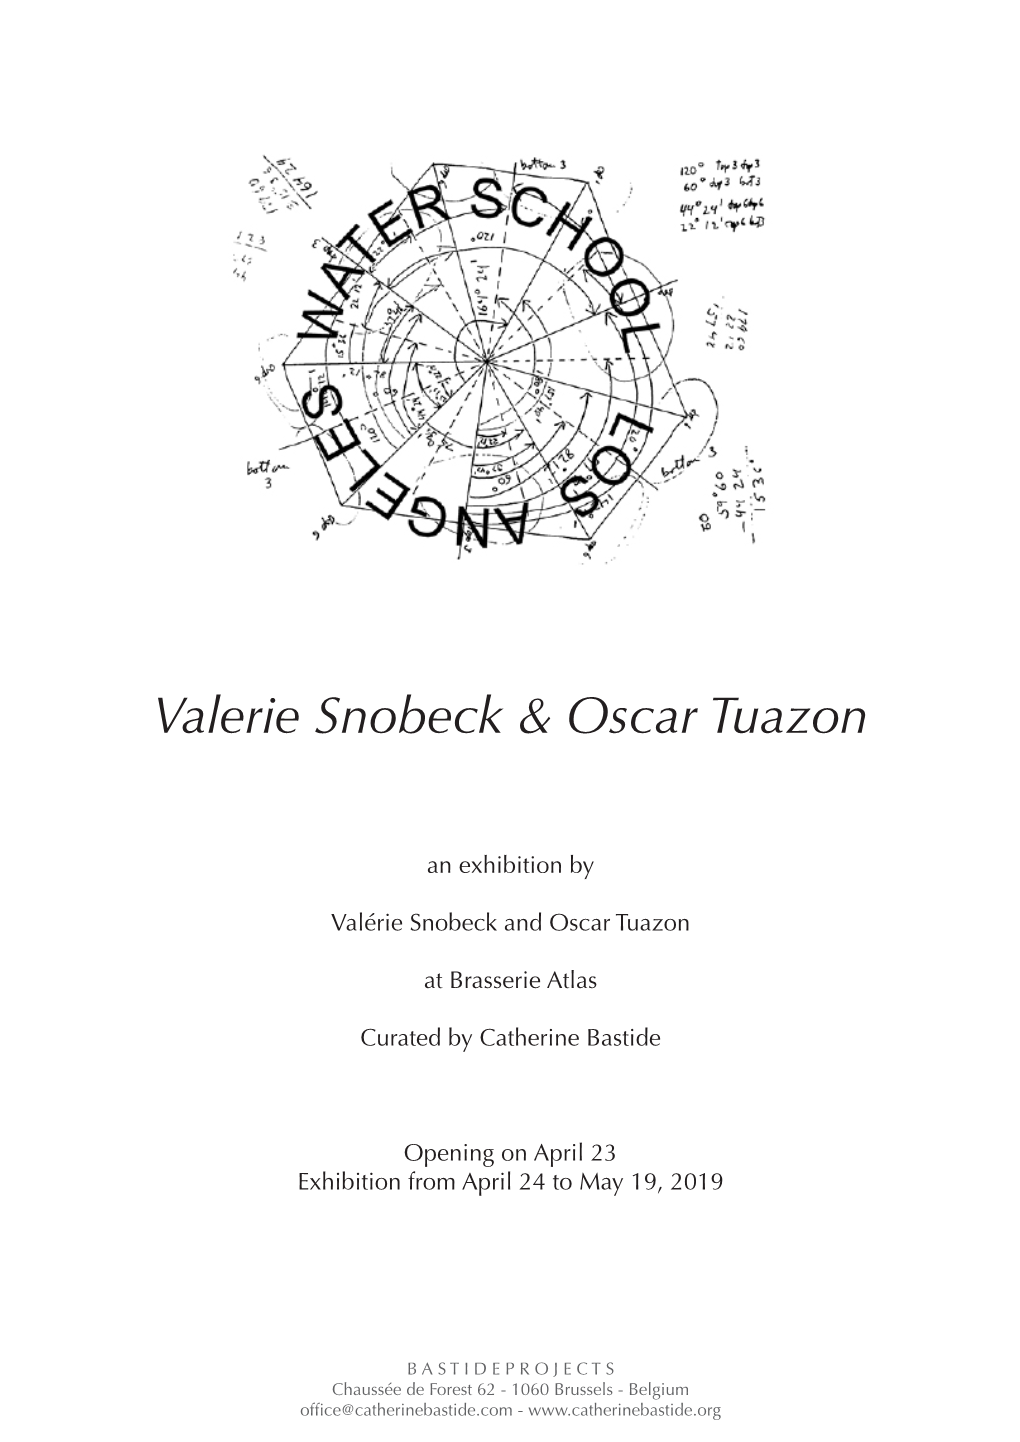 Valerie Snobeck & Oscar Tuazon